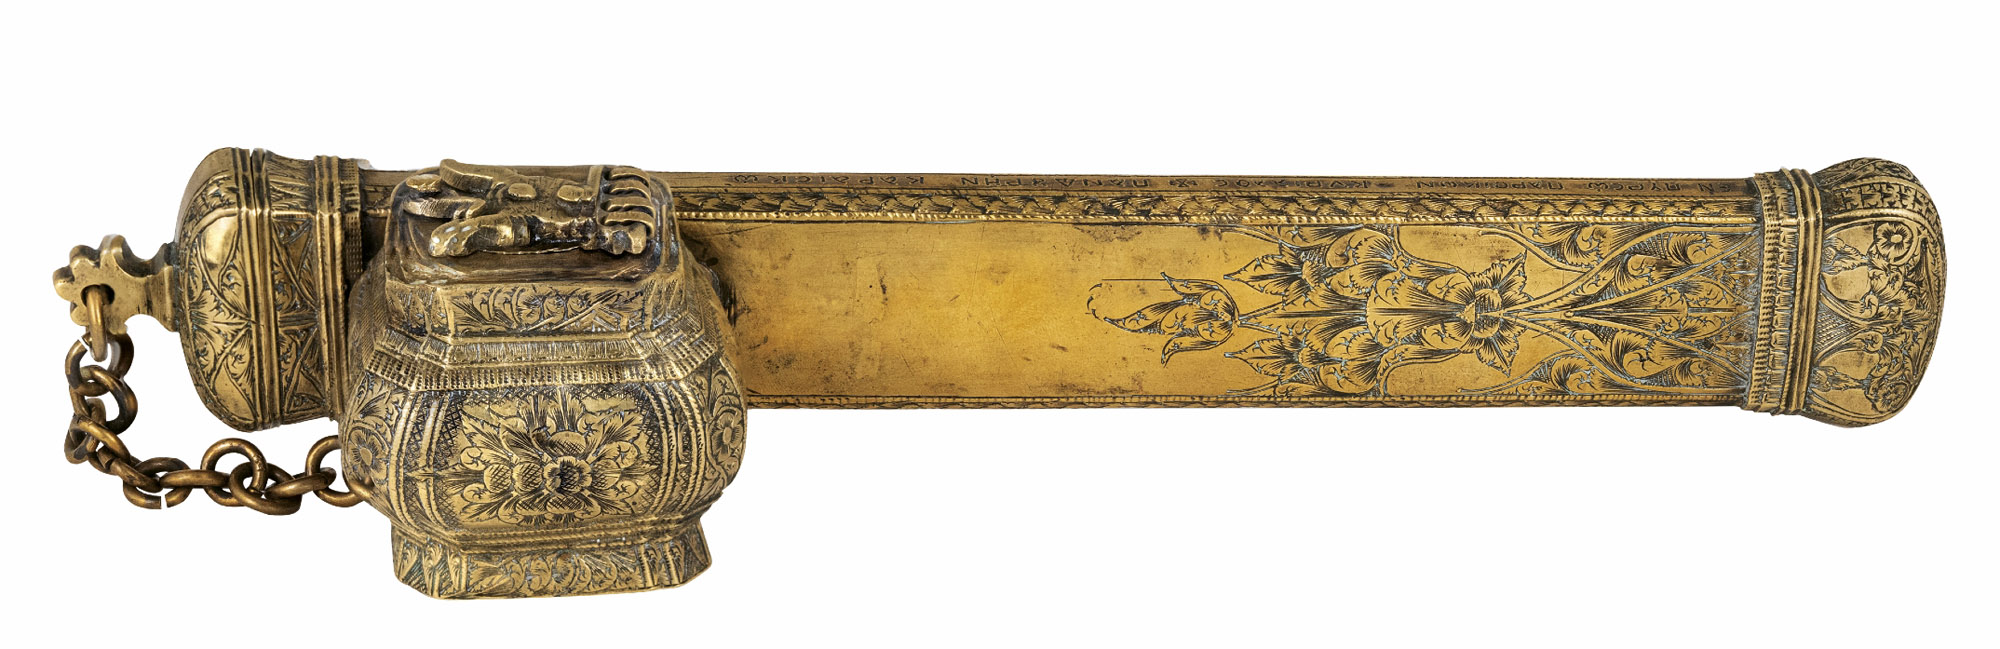 Το καλαμάρι του ΓΕΩΡΓΙΟΥ ΚΑΡΑΪΣΚΑΚΗ - Ασημένιο επίχρυσο καλαμάρι (αρχές 19ου αιώνα)